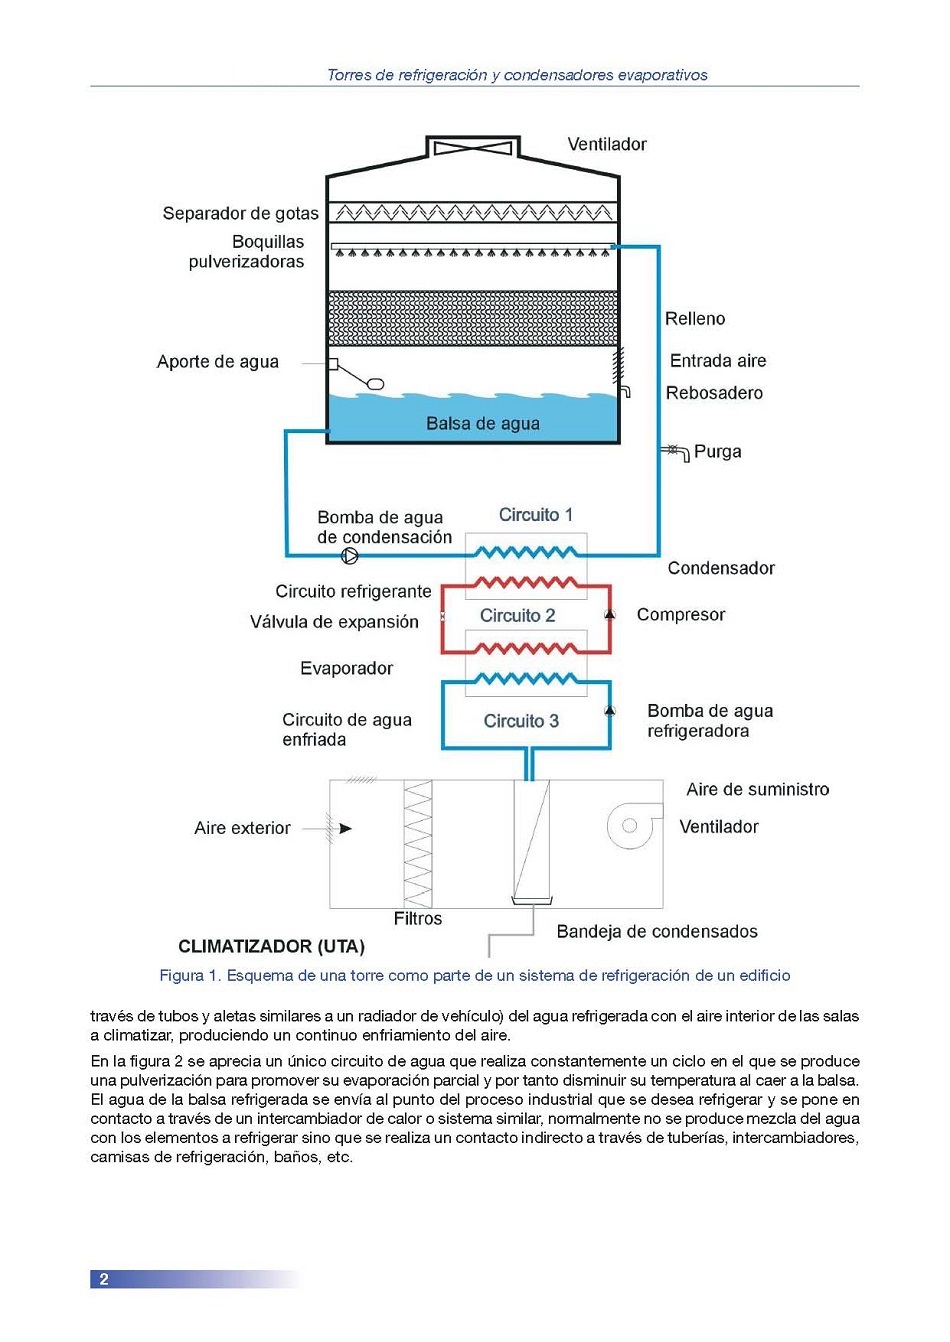 Torres de Refrigeracin y Condensadores Evaporativos. Pgina 02